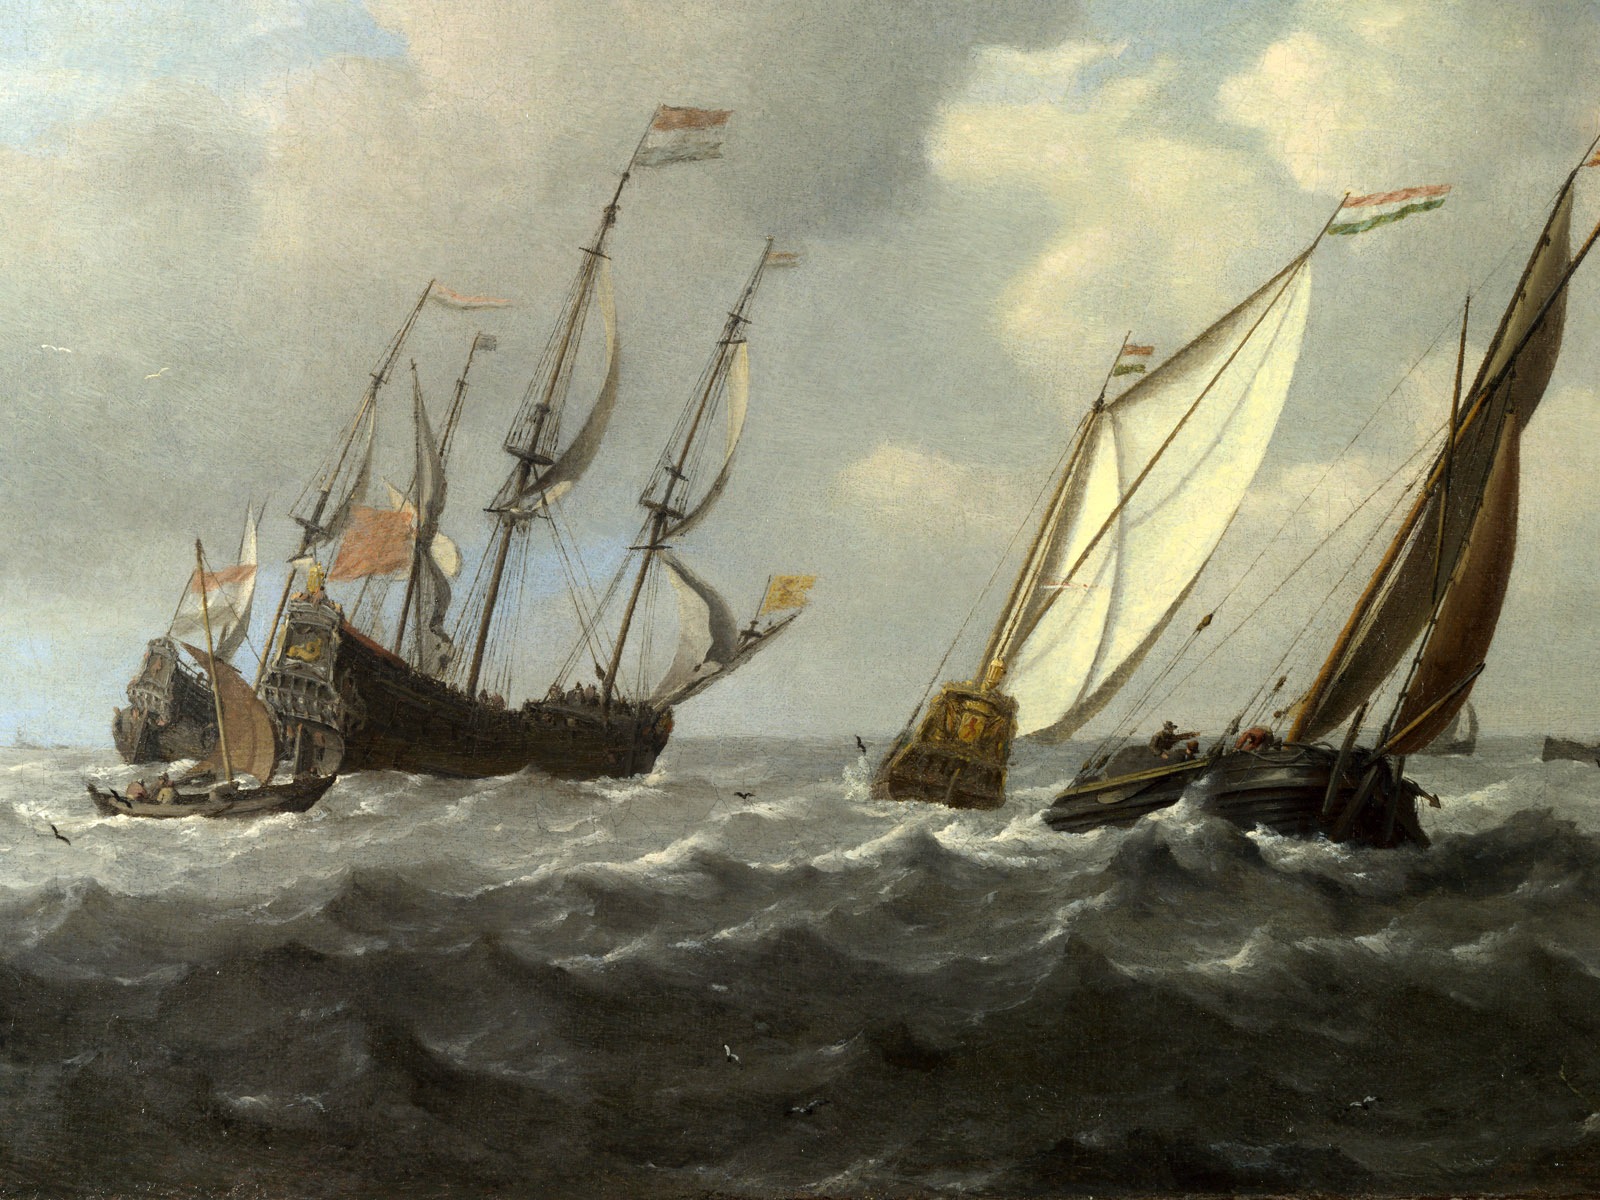 伦敦画廊帆船 壁纸(二)1 - 1600x1200